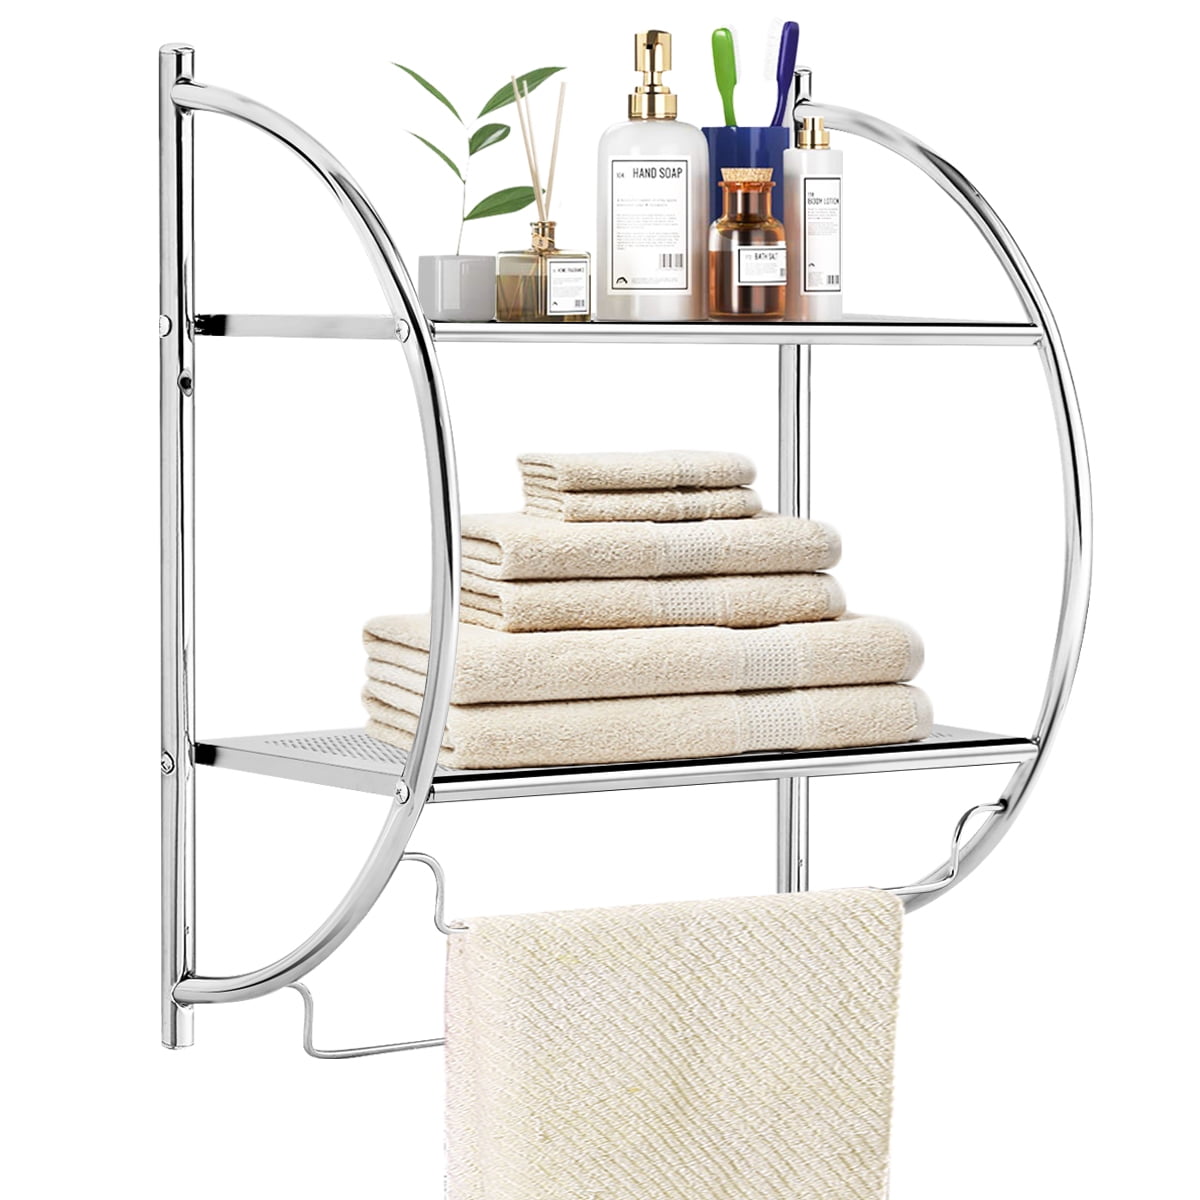 Wall Mount Organizer Shelf with Towel washcloth Bar 2 Shelves bathroom Storage